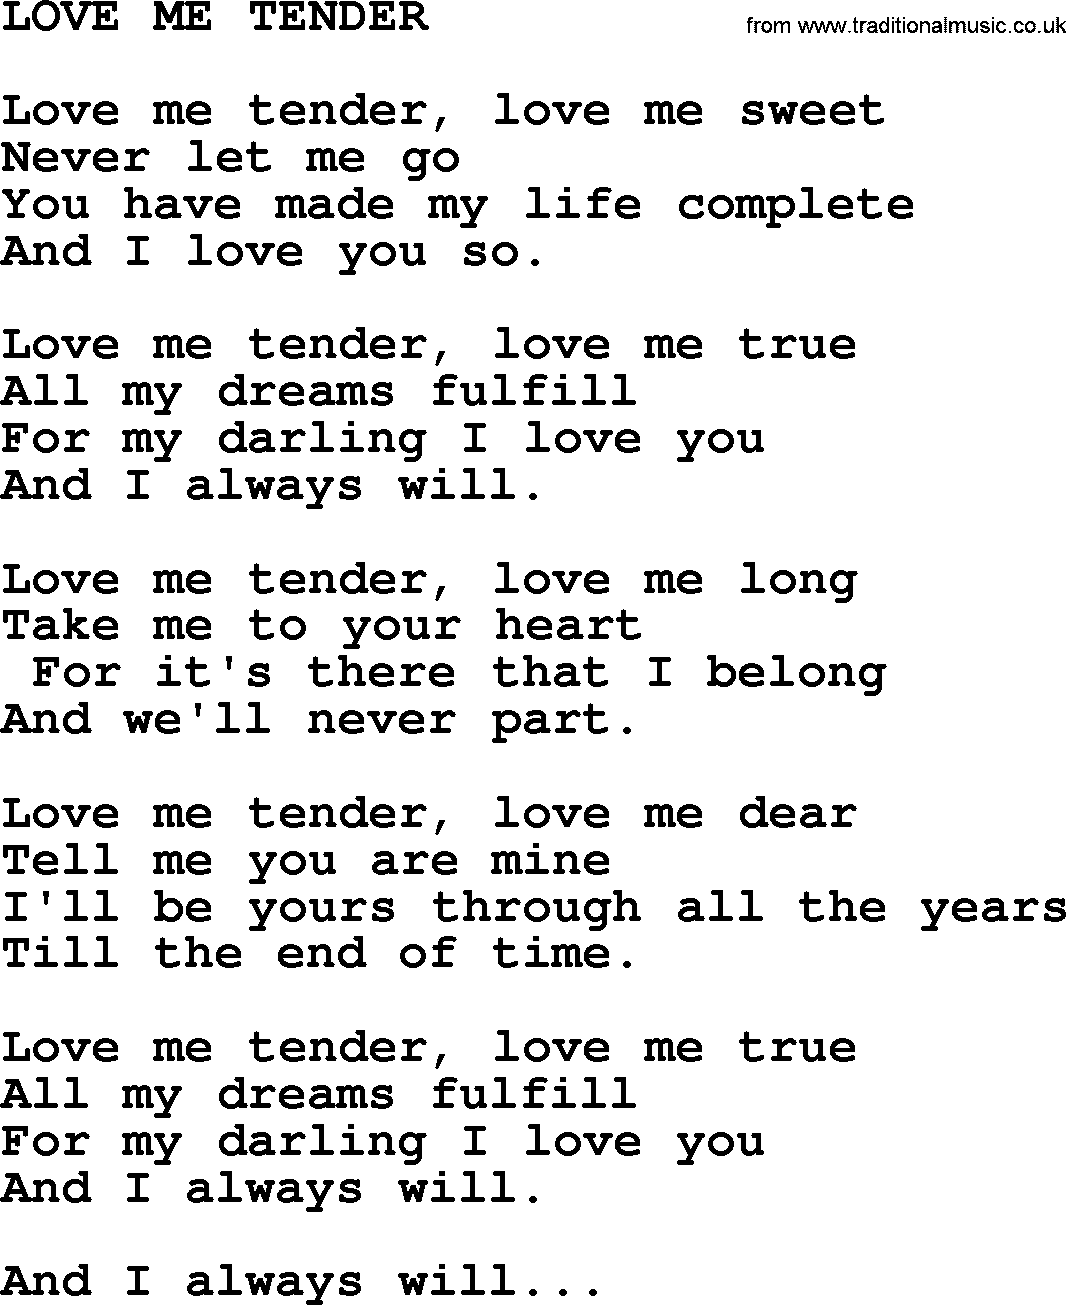 Merle Haggard song: Love Me Tender, lyrics.